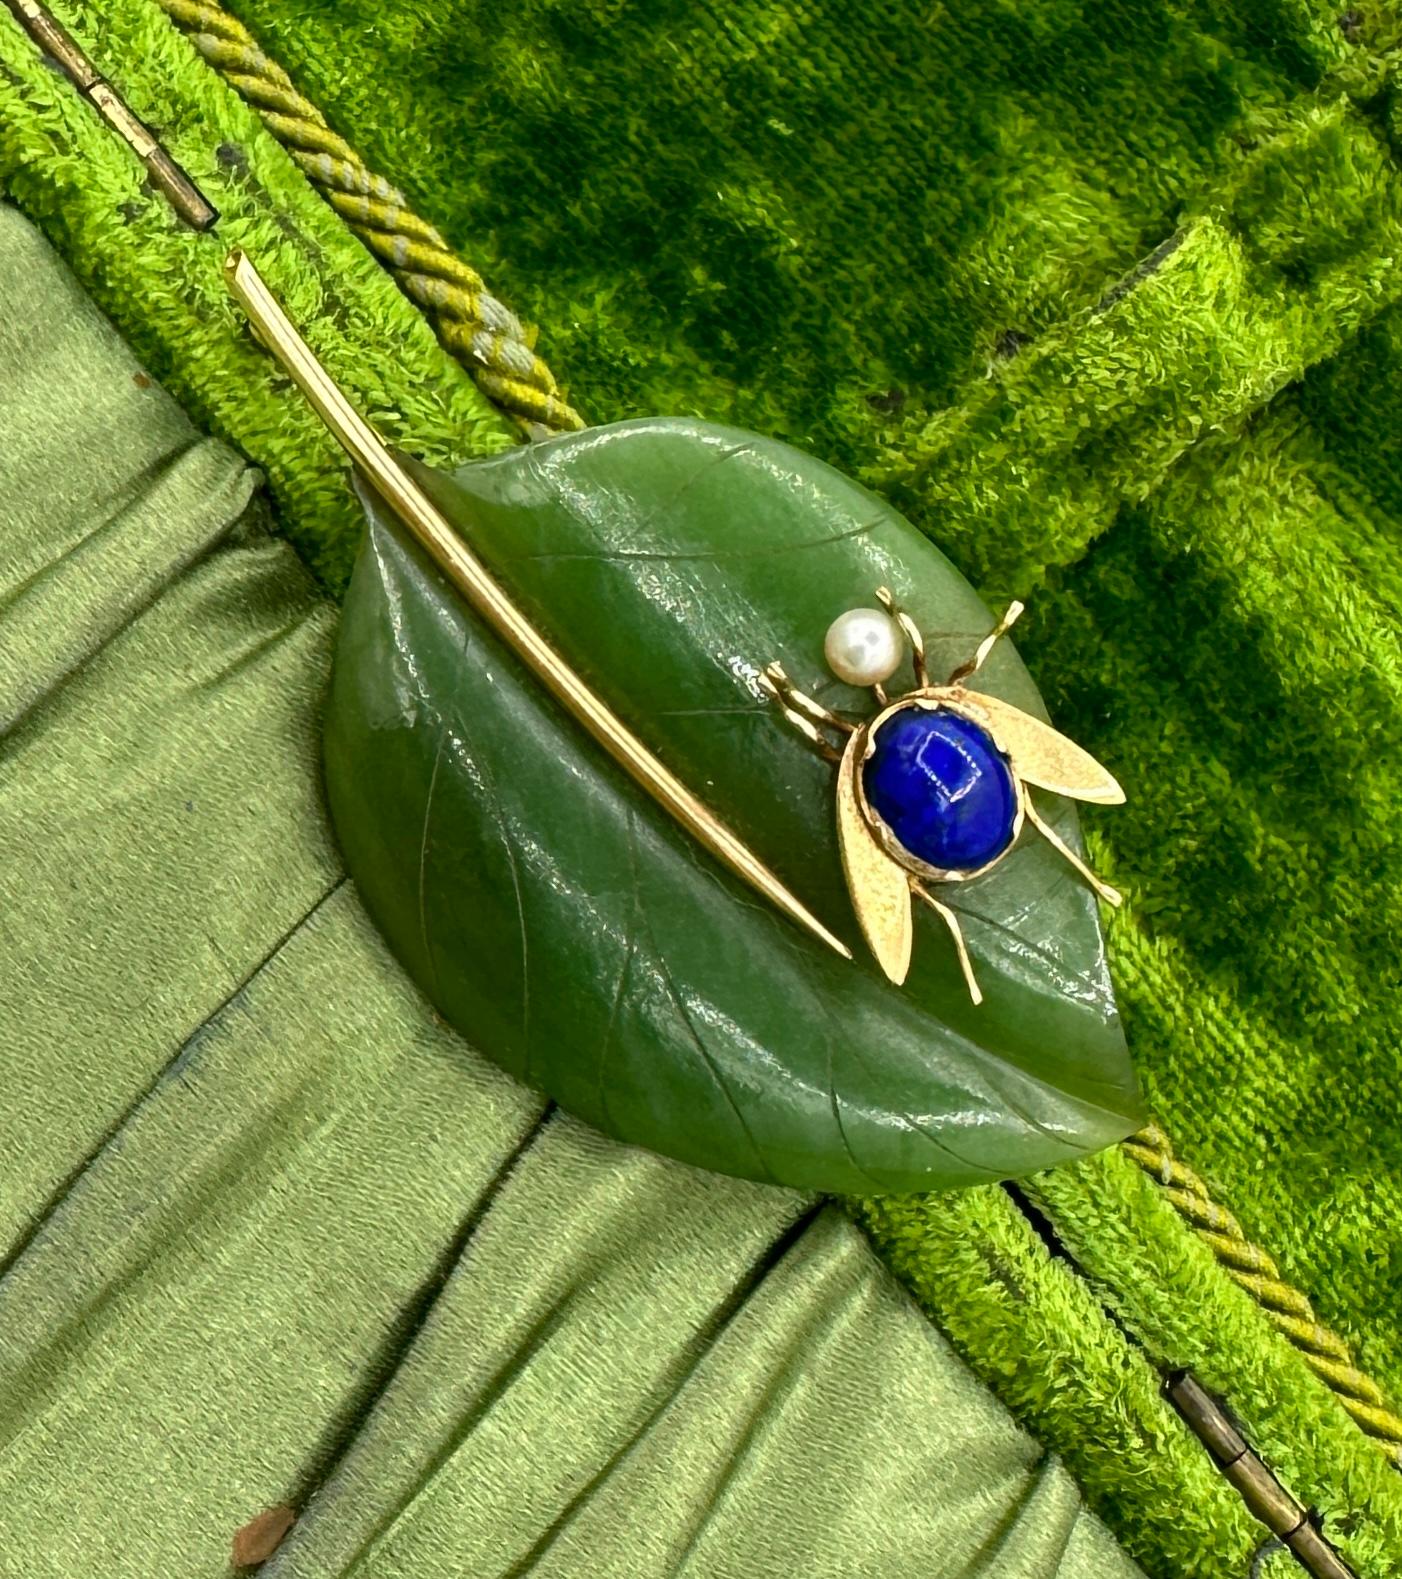 Dies ist eine absolut atemberaubende Jade, Lapis Lazuli und Perle Fly Bug Insekt auf einem Blatt Brosche Pin in 14 Karat Gelbgold.  Die fabelhafte Fliege oder das Insekt hat einen Körper aus Lapislazuli-Cabochon und einen Perlenkopf.  Seine Flügel